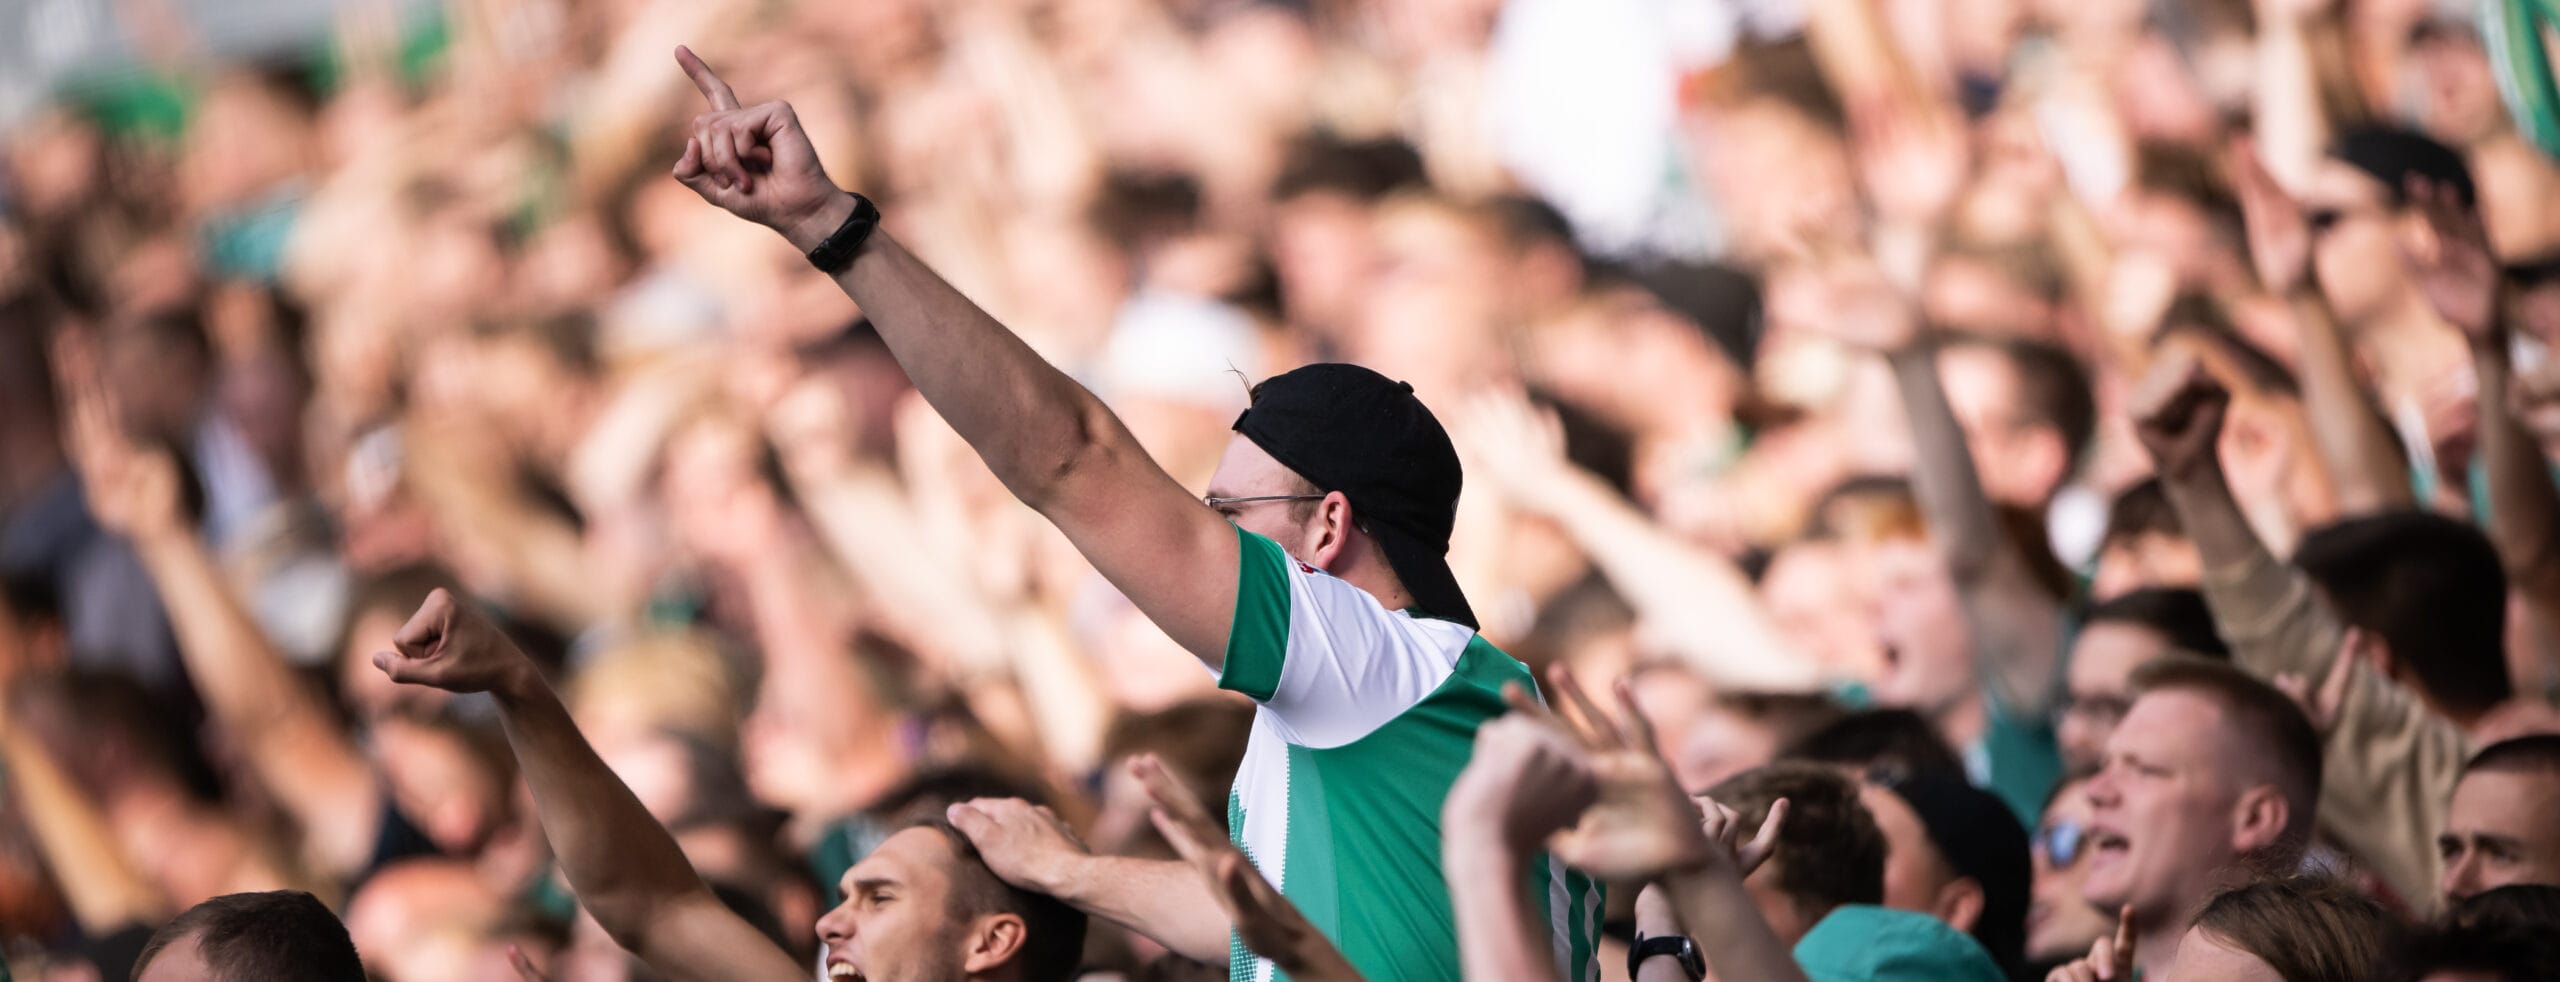 Werder Bremen - FSV Mainz: Werder mischt die Liga auf